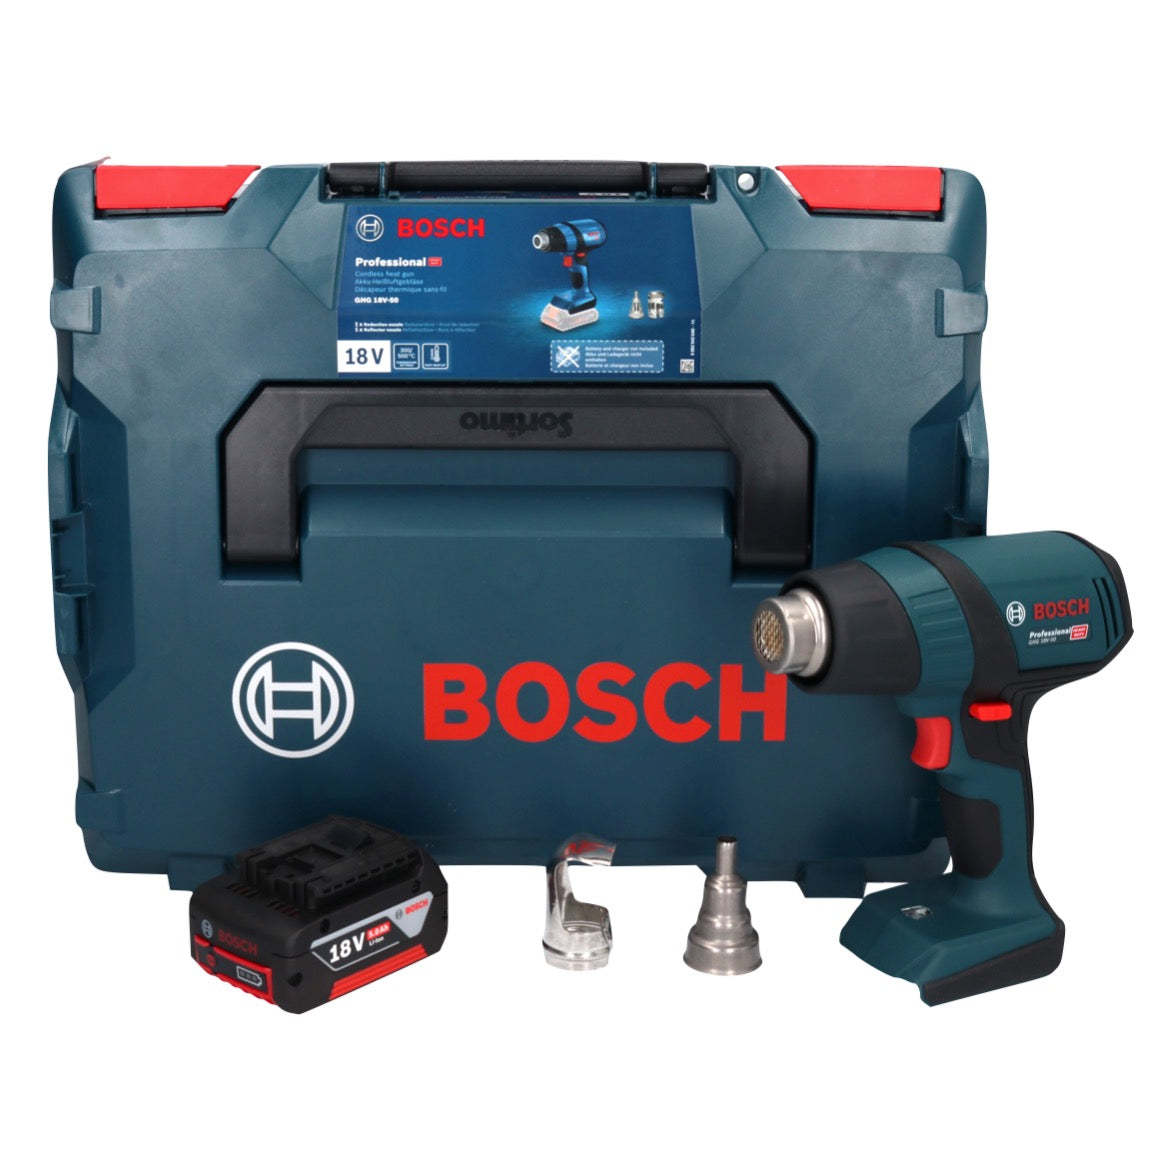 C / Professional – Toolbrothers 300° 18 V 500° GHG Akku 18V-50 Heissluftgebläse Bosch